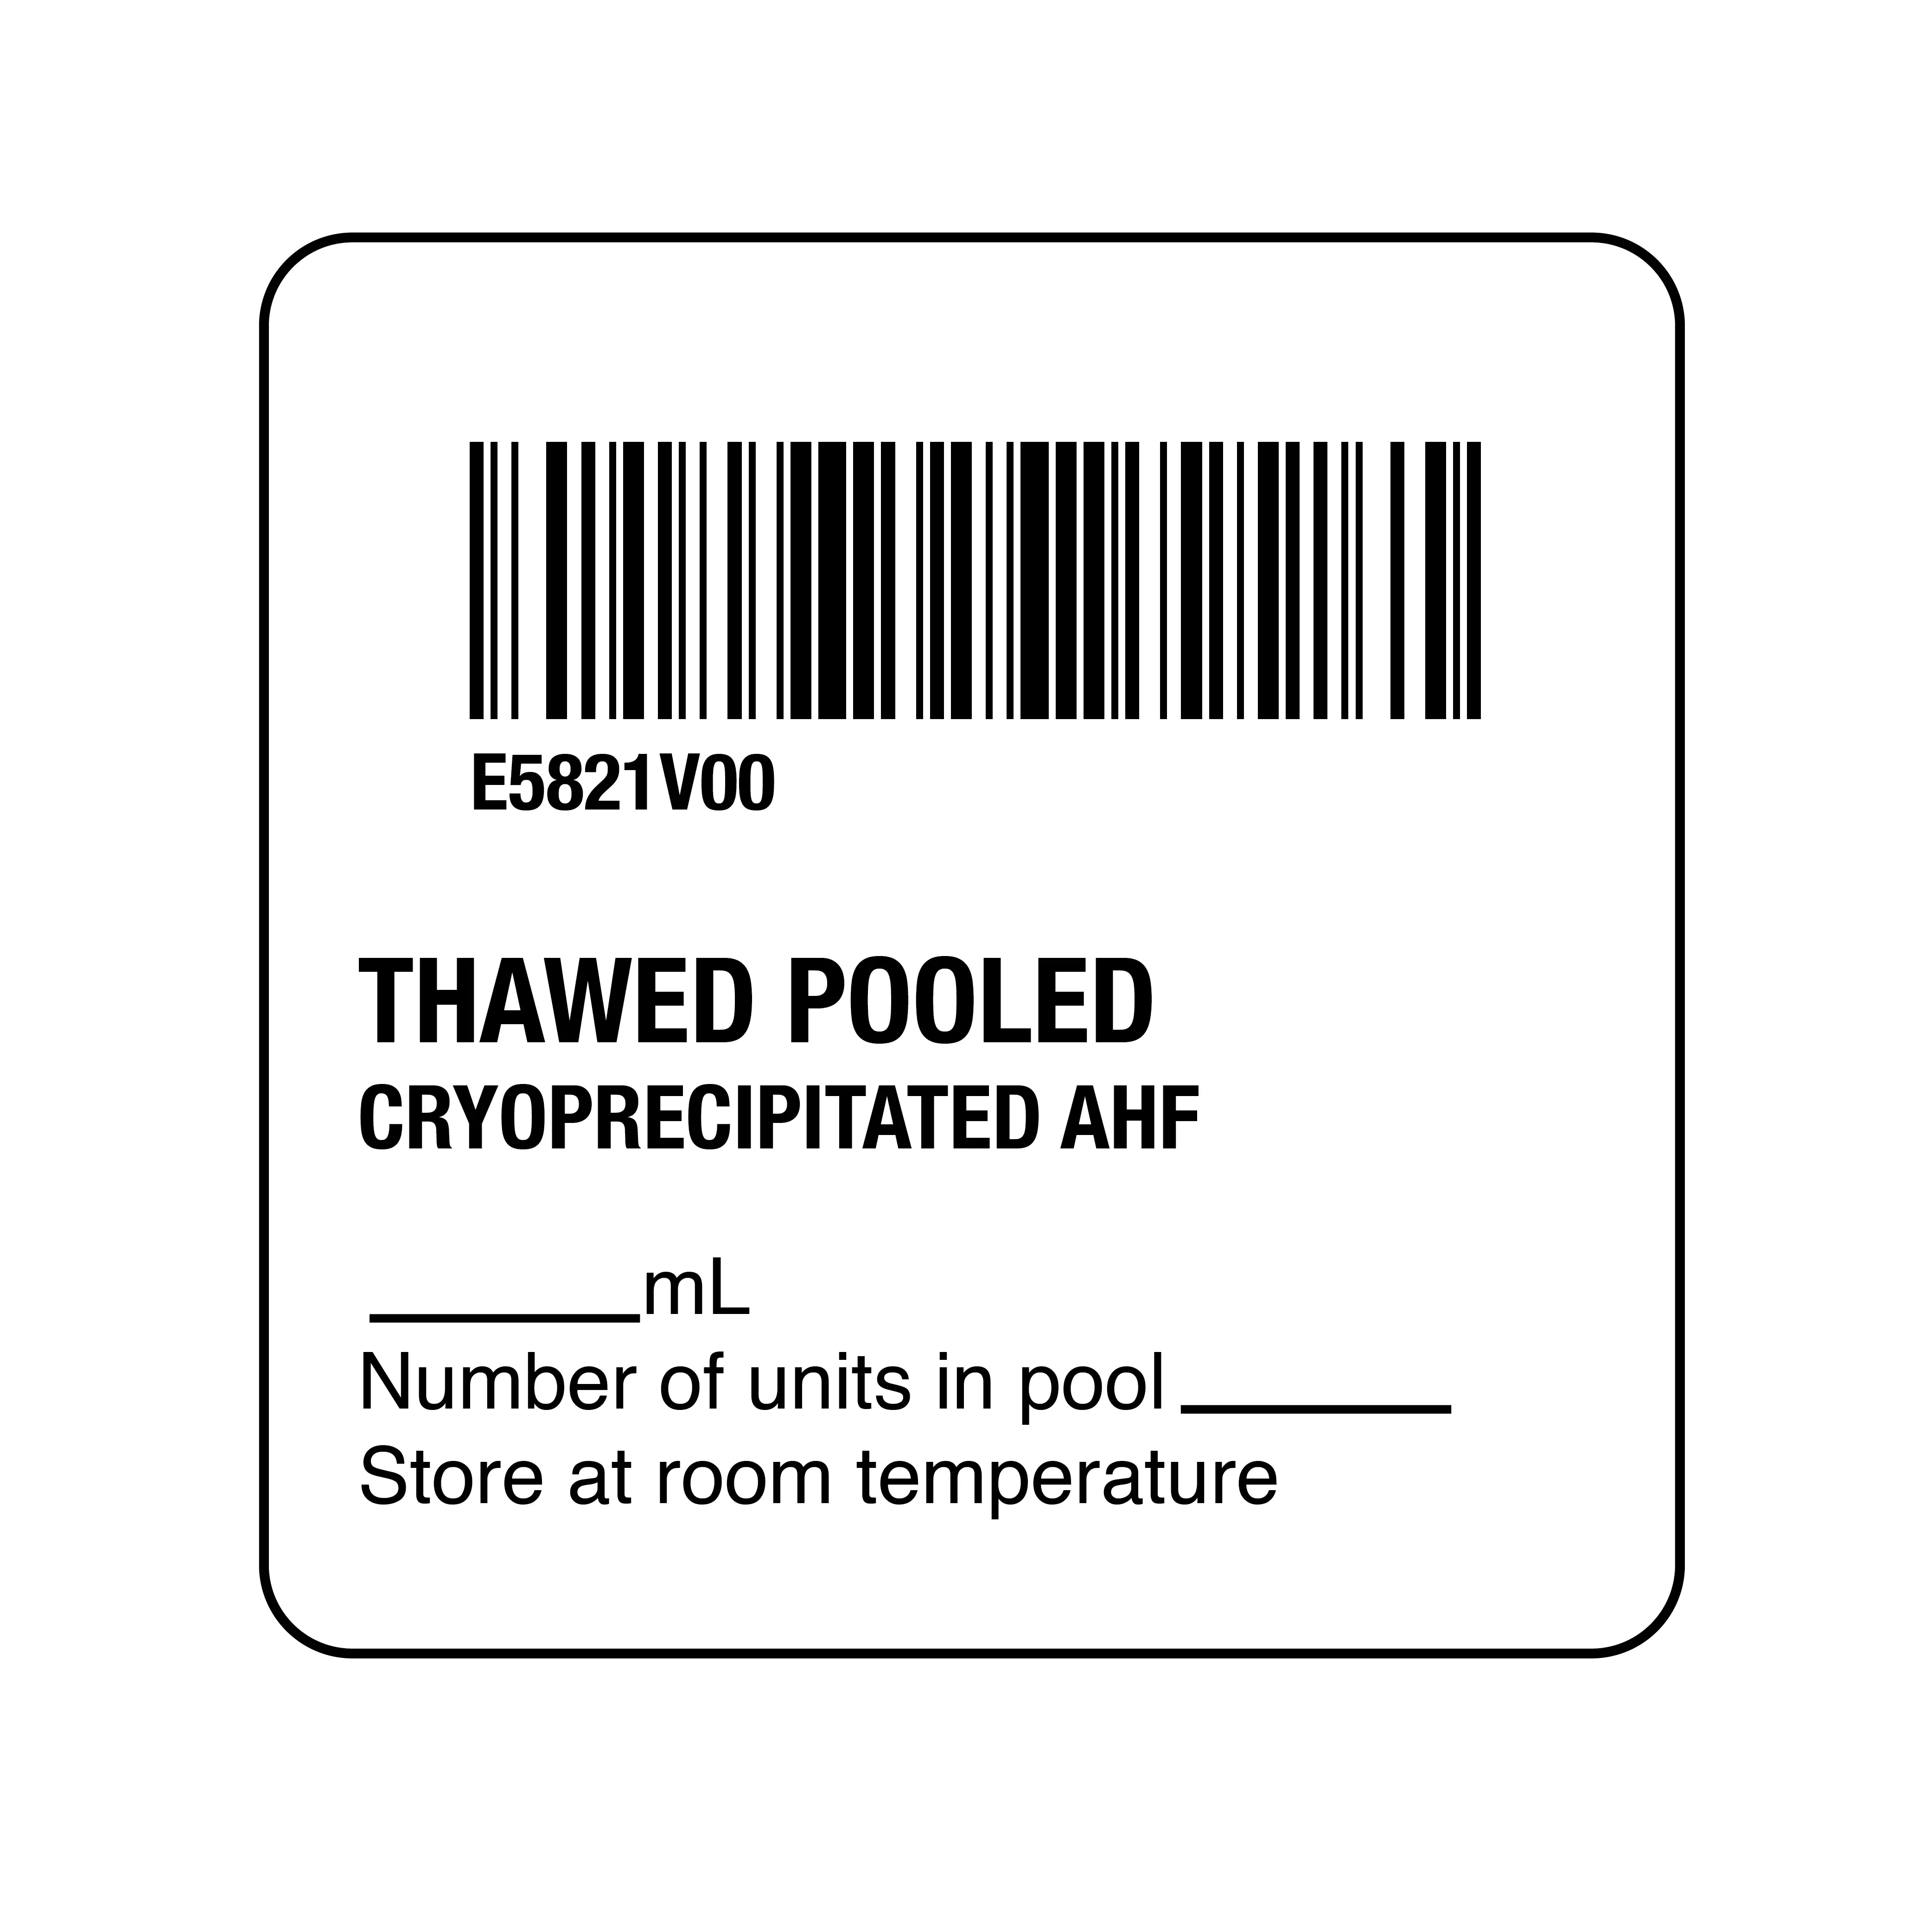 ISBT 128 Thawed Pooled Cryoprecipitated AHF